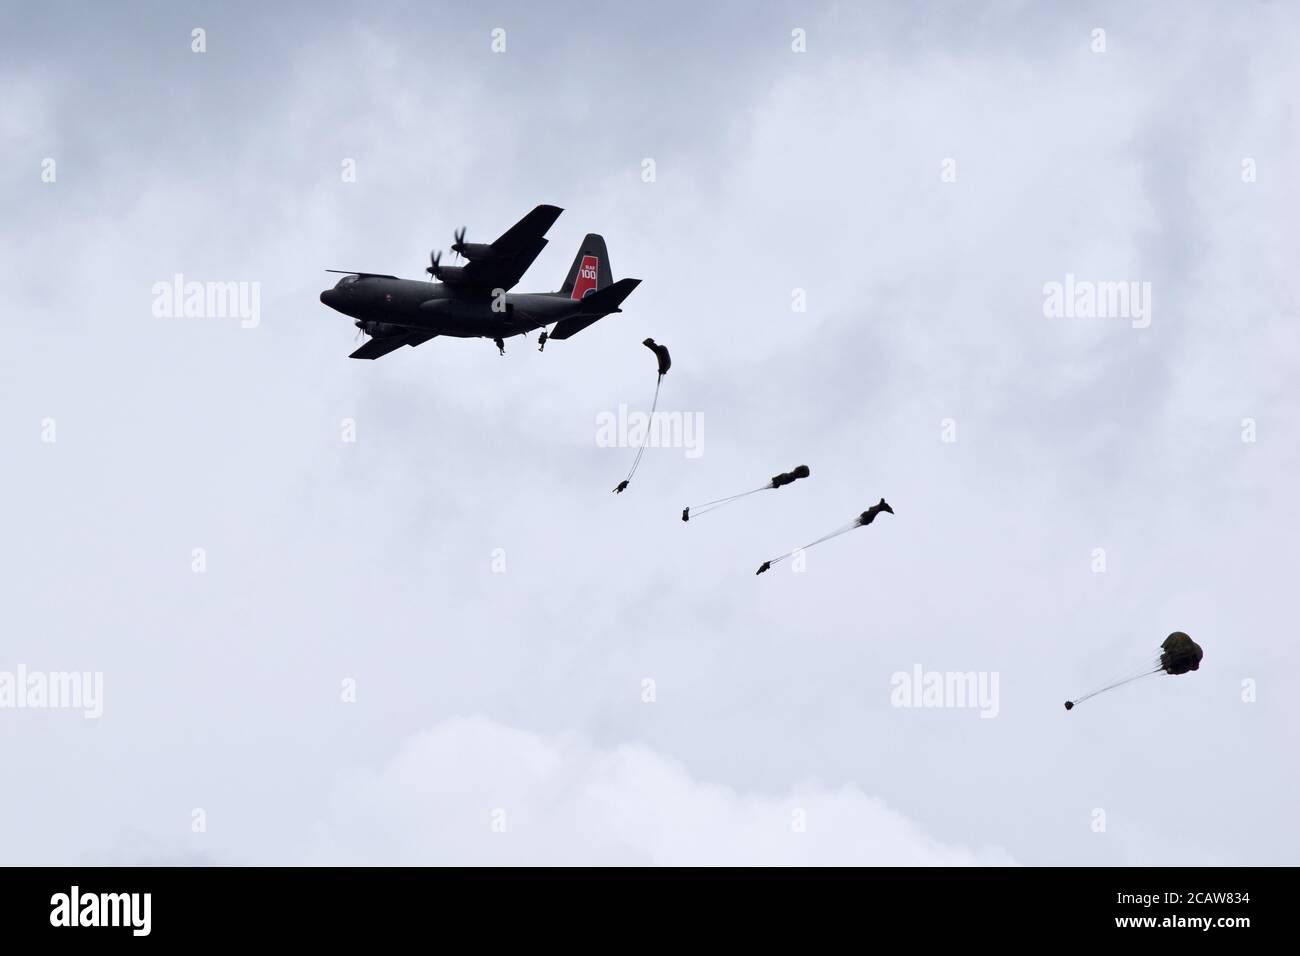 Chute de parachute à dôme d'un avion de transport C-130 Hercules dans le cadre des commémorations du jour D 100, Sonnerville, France Banque D'Images